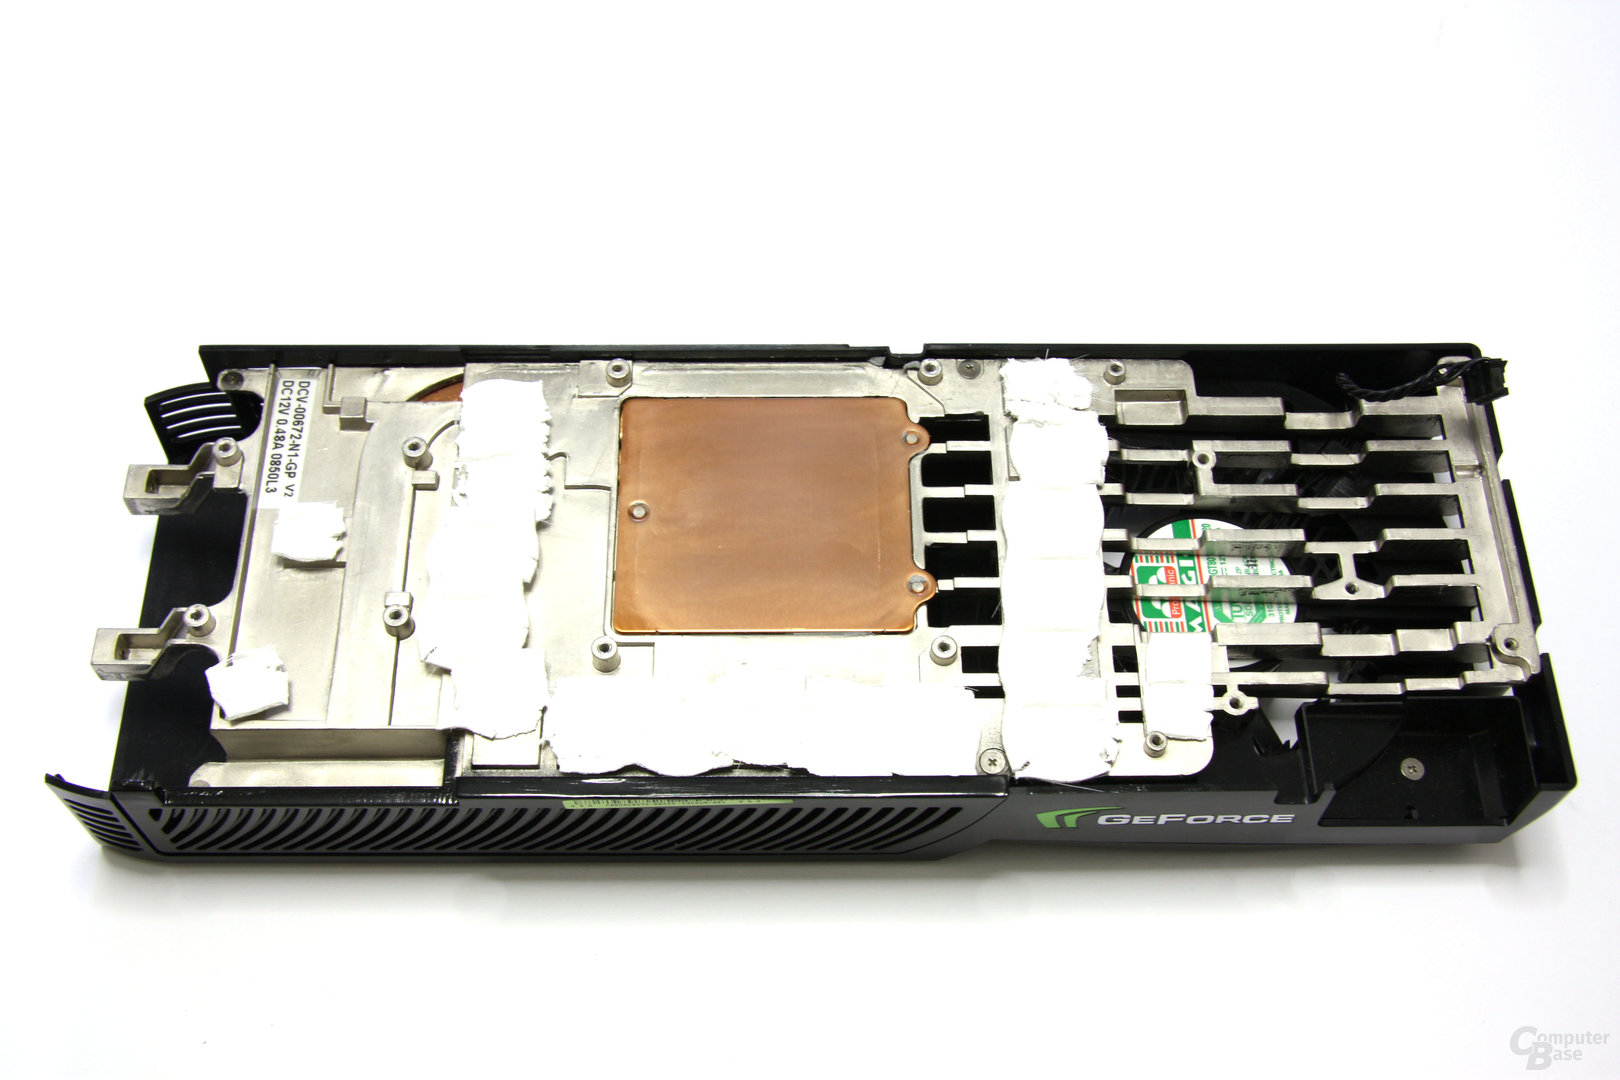 GeForce GTX 285 Kühlerrückseite